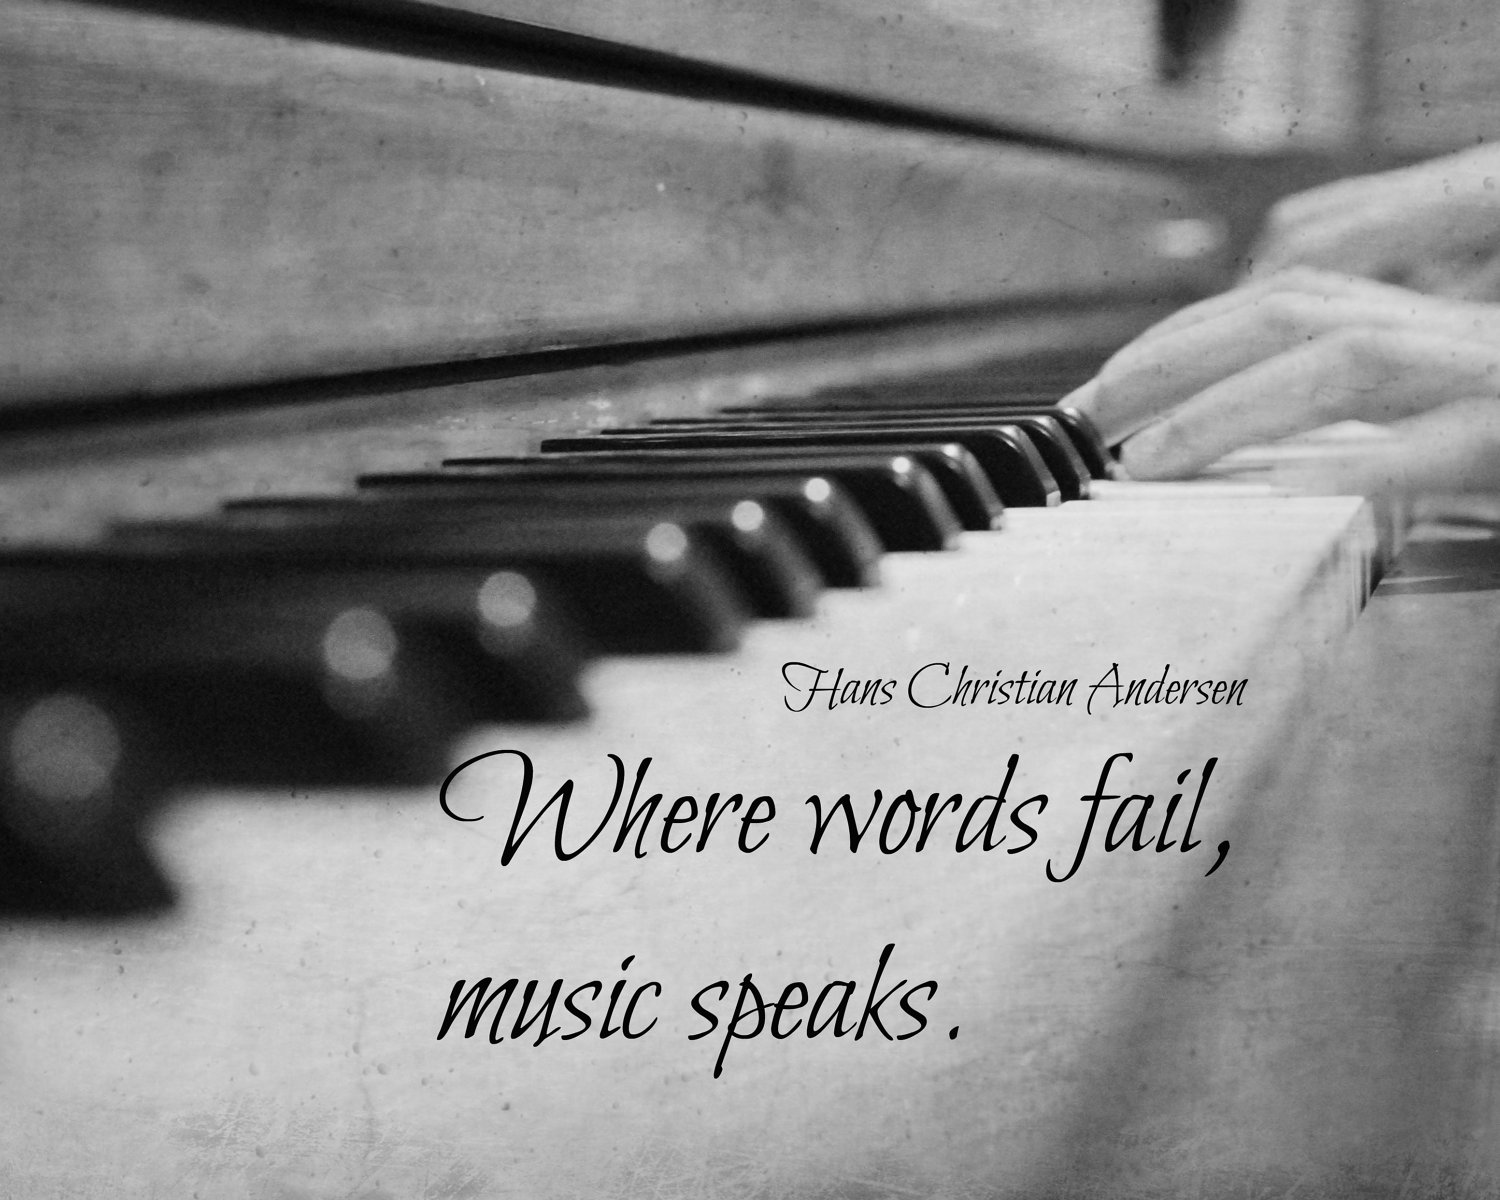 Music speaks